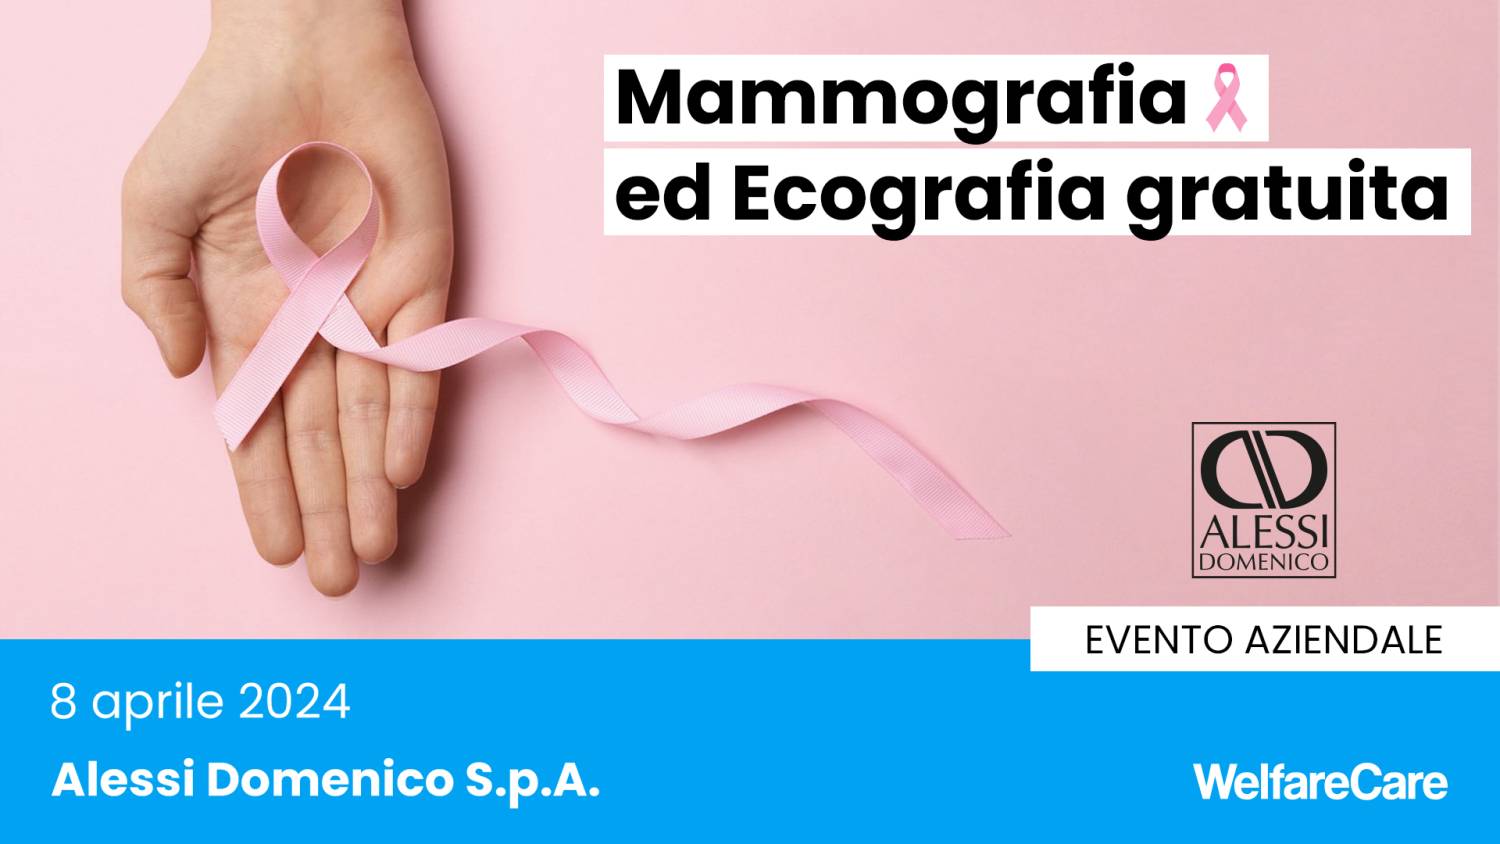 ALESSI DOMENICO - Mammografia ed ecografia gratuita